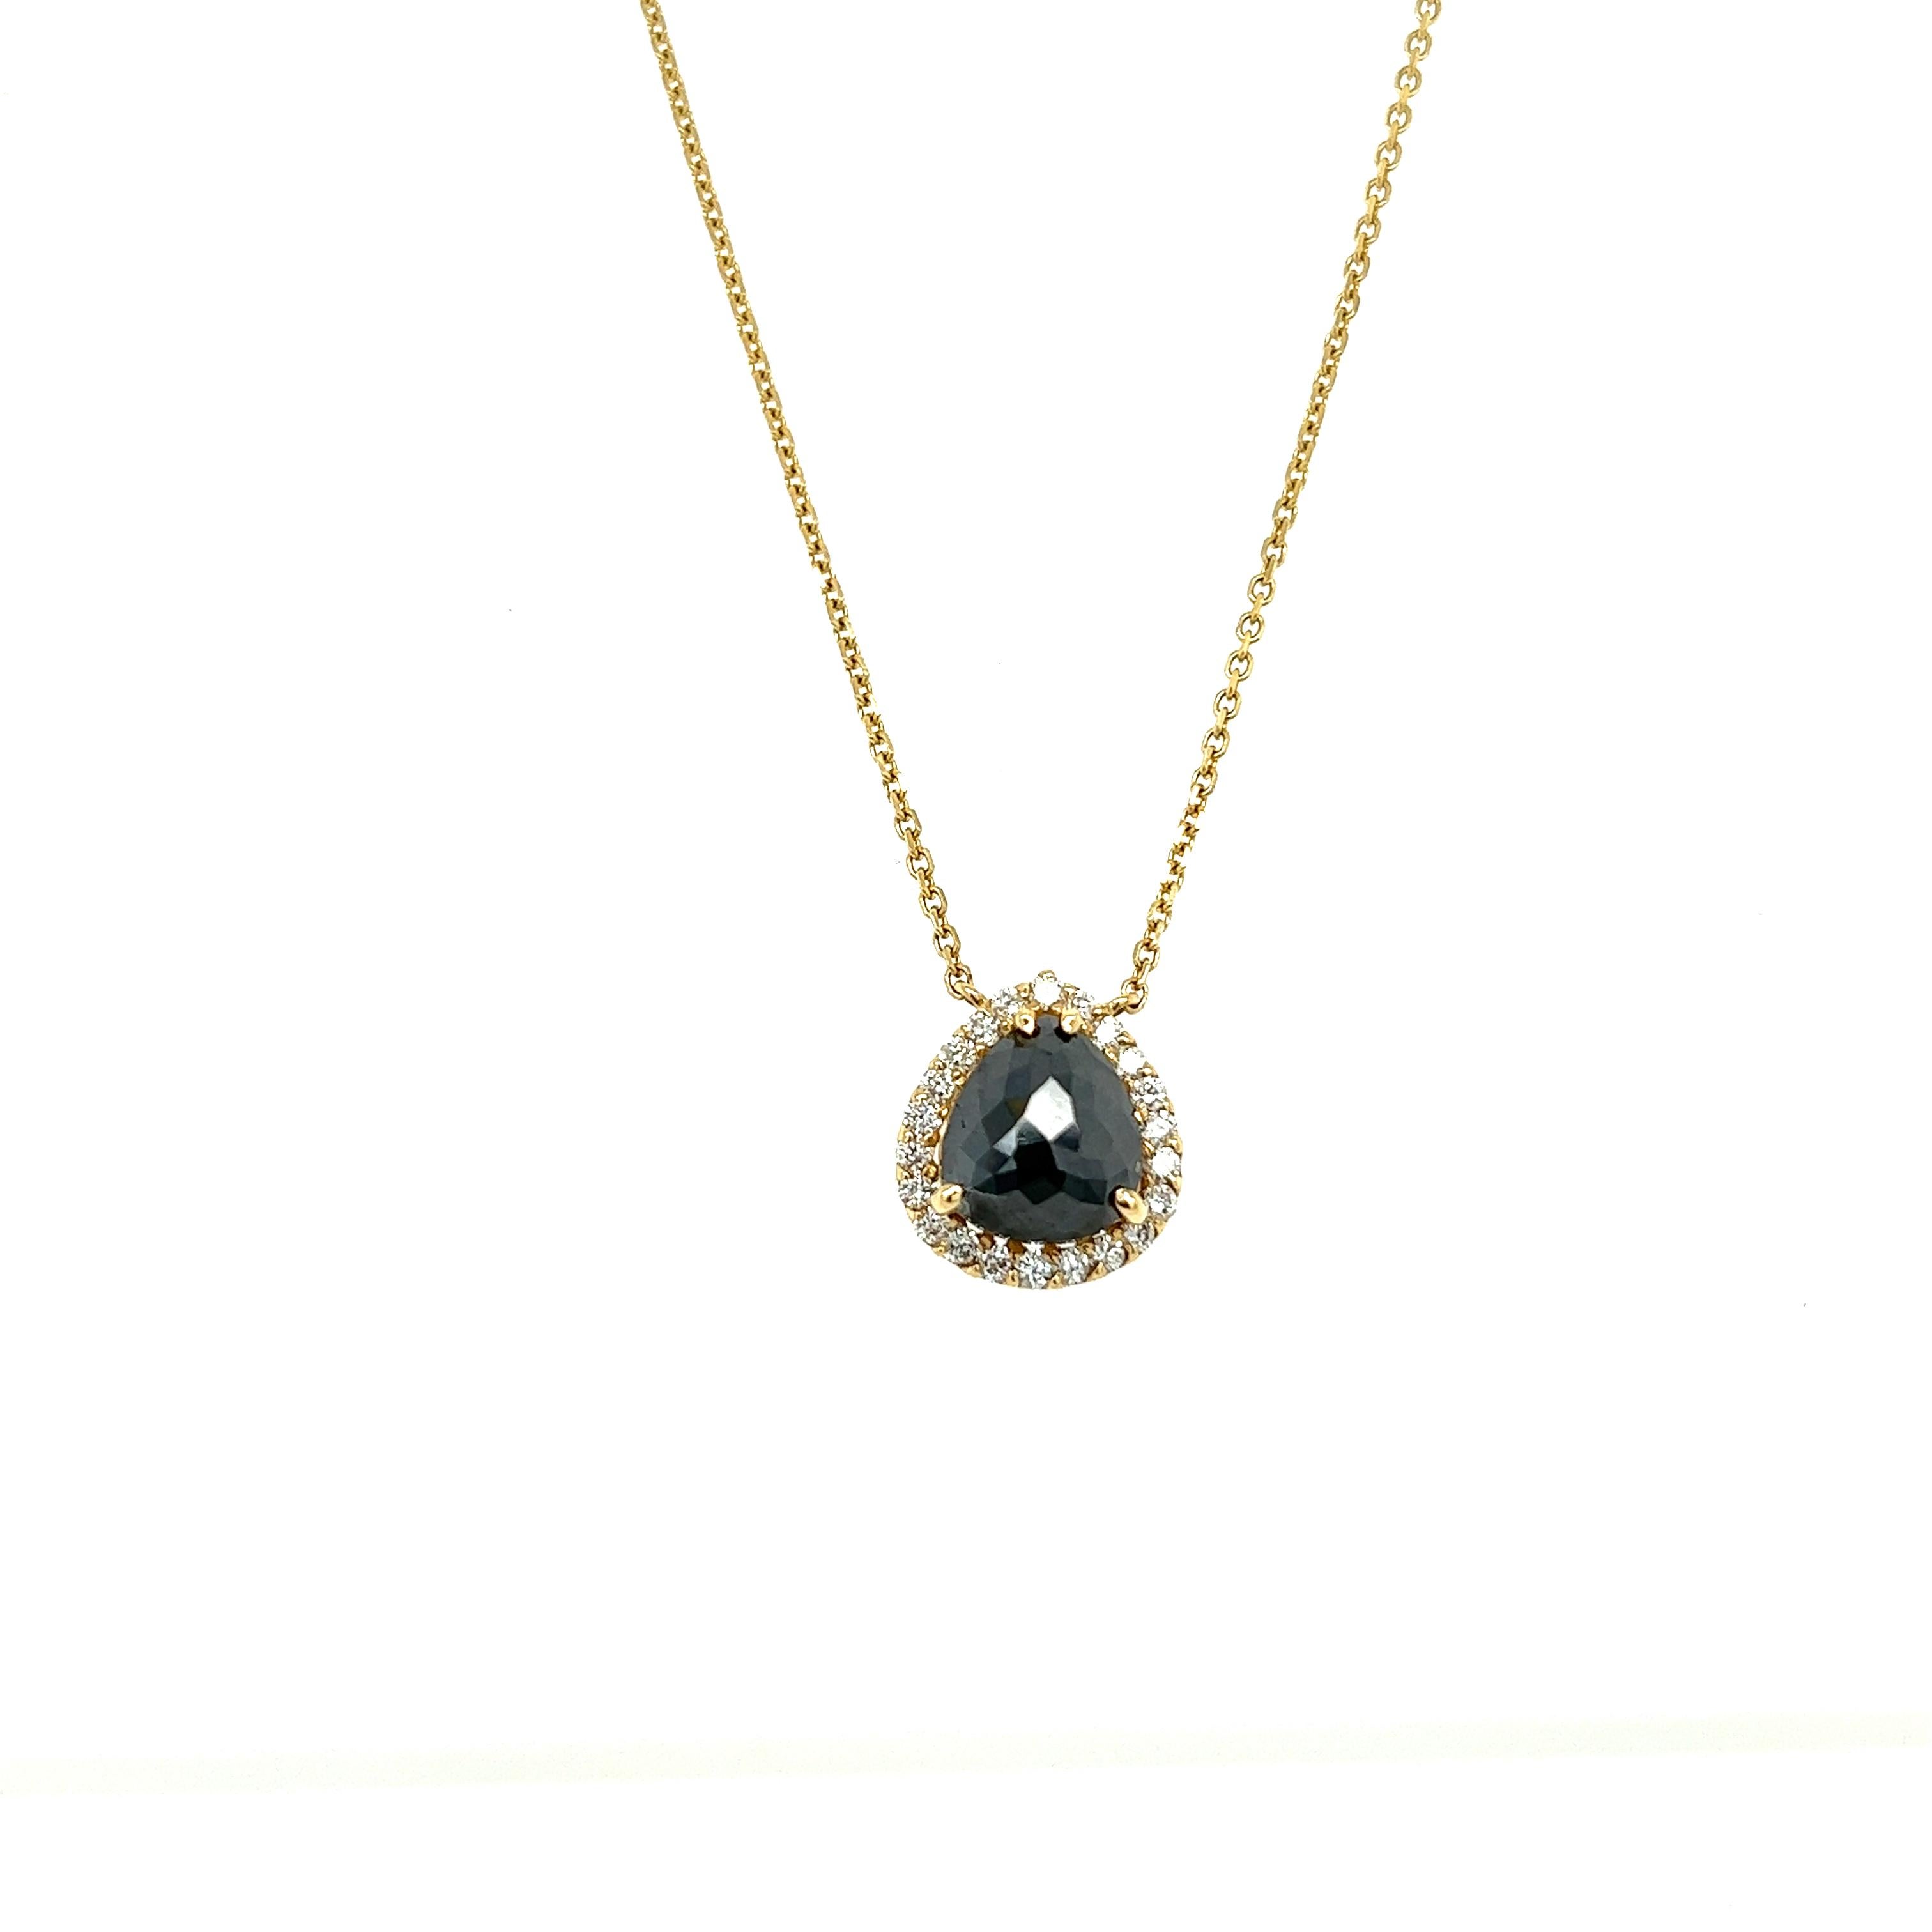 Diese schöne Kette hat einen natürlichen schwarzen Diamanten, der 1,54 Karat wiegt und auch natürliche weiße Diamanten im Rundschliff, die 0,37 Karat wiegen. 
Das Gesamtkaratgewicht der Halskette beträgt 1.91 Karat. 

Die Halskette ist aus 14 Karat